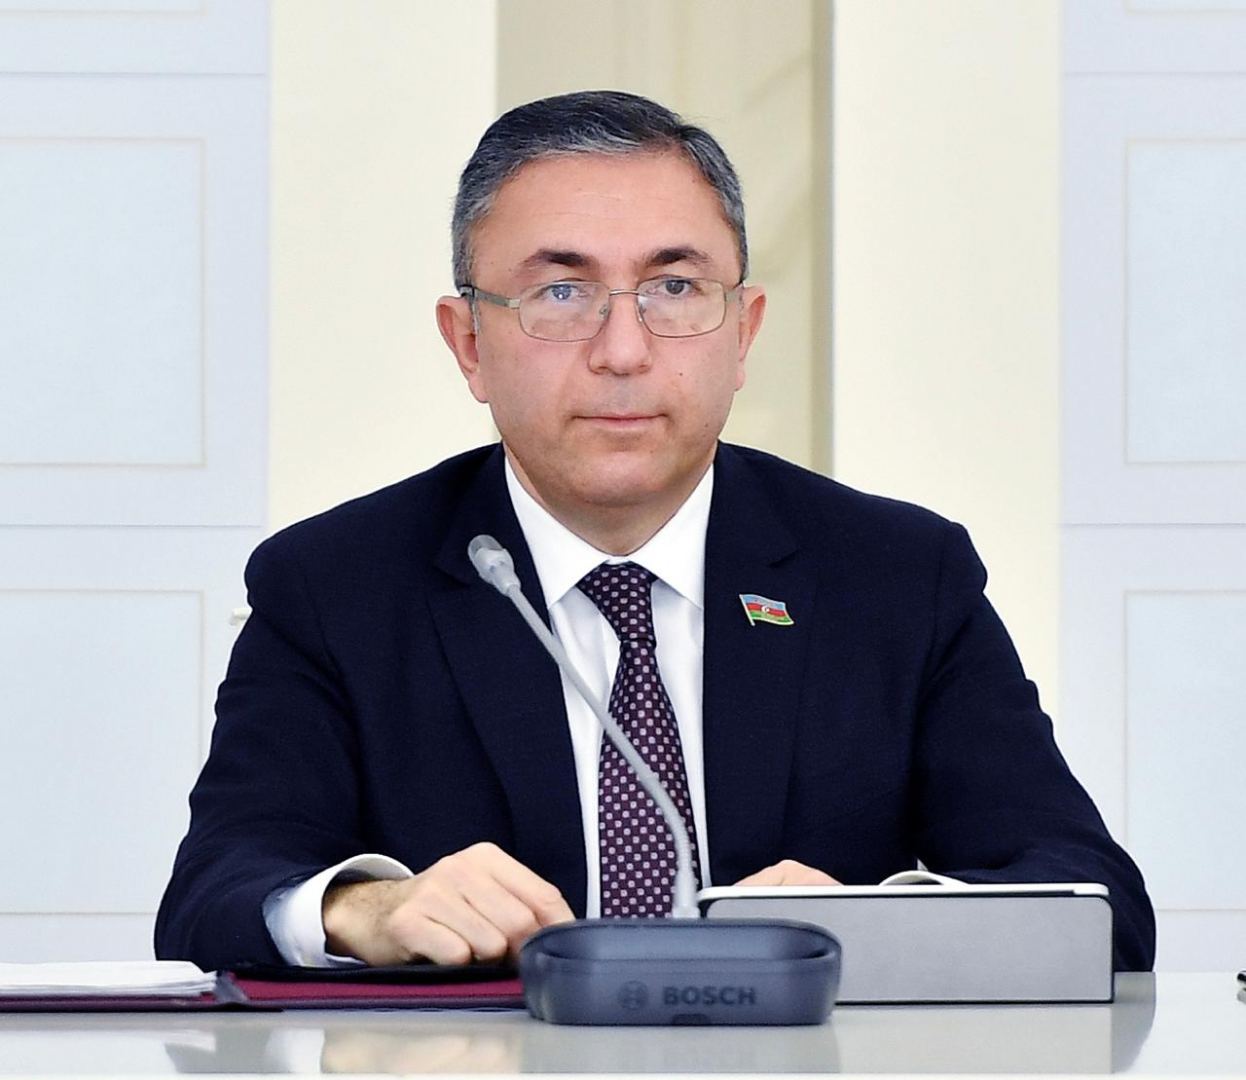 Говоря об отношениях с Азербайджаном, Пашинян отметил, что несмотря на трудности, уже пройден определенный путь – Таир Миркишили